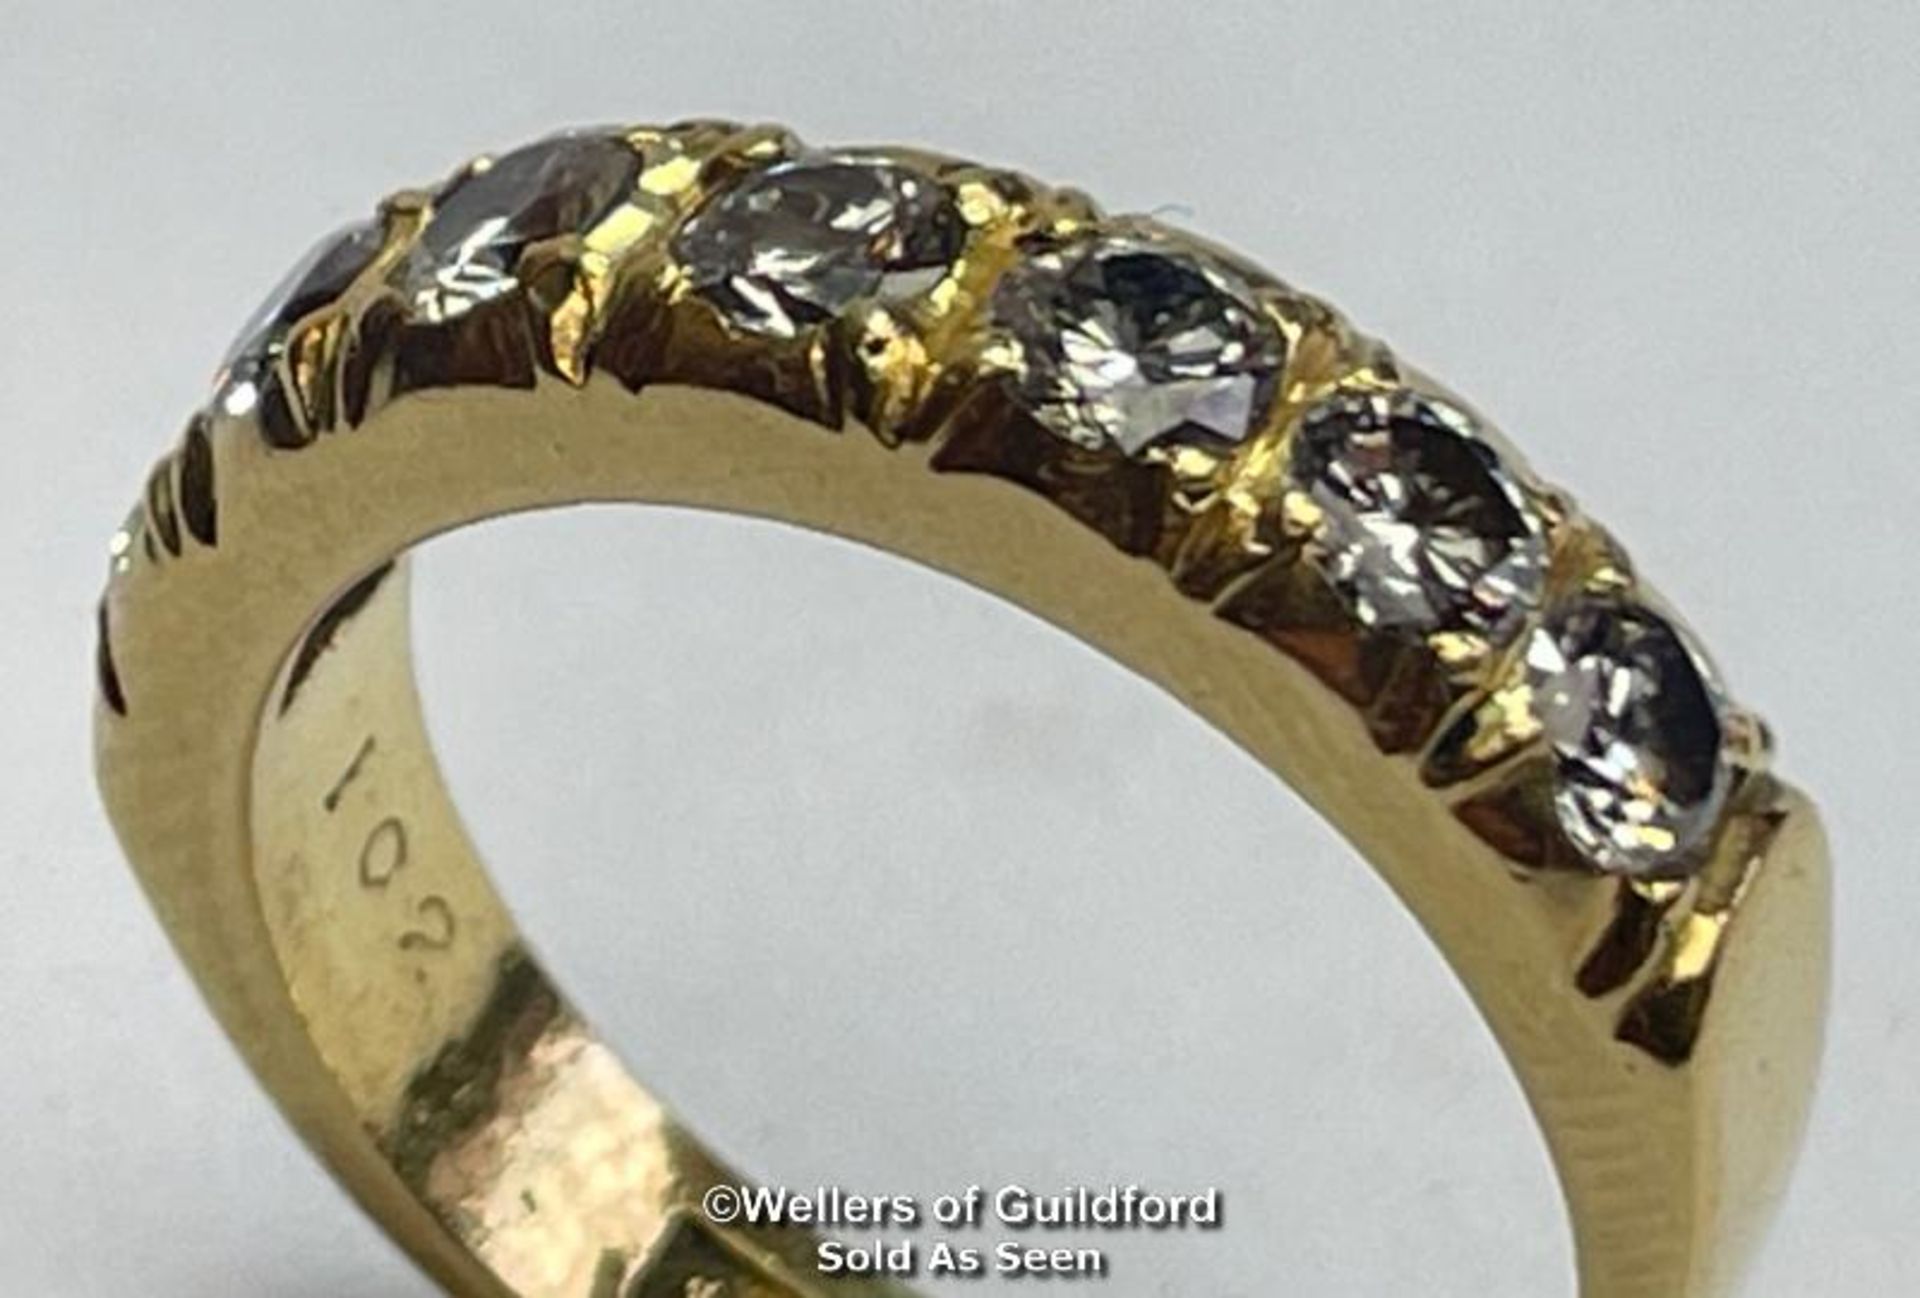 Diamond eternity half band ring in 18ct gold. Seven round cut brilliant diamonds estimated total